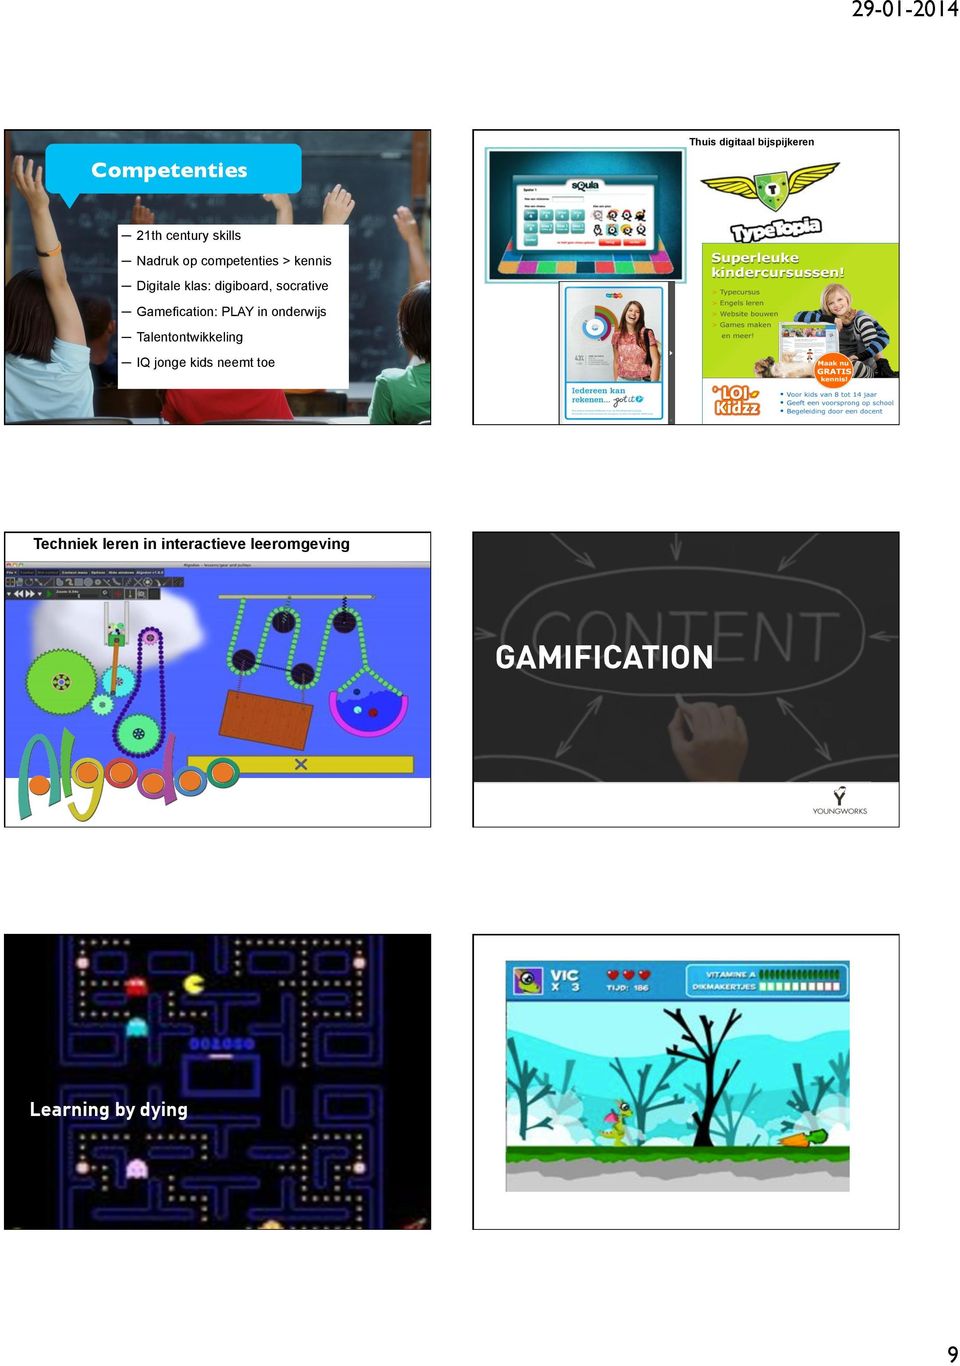 Gamefication: PLAY in onderwijs! Talentontwikkeling!